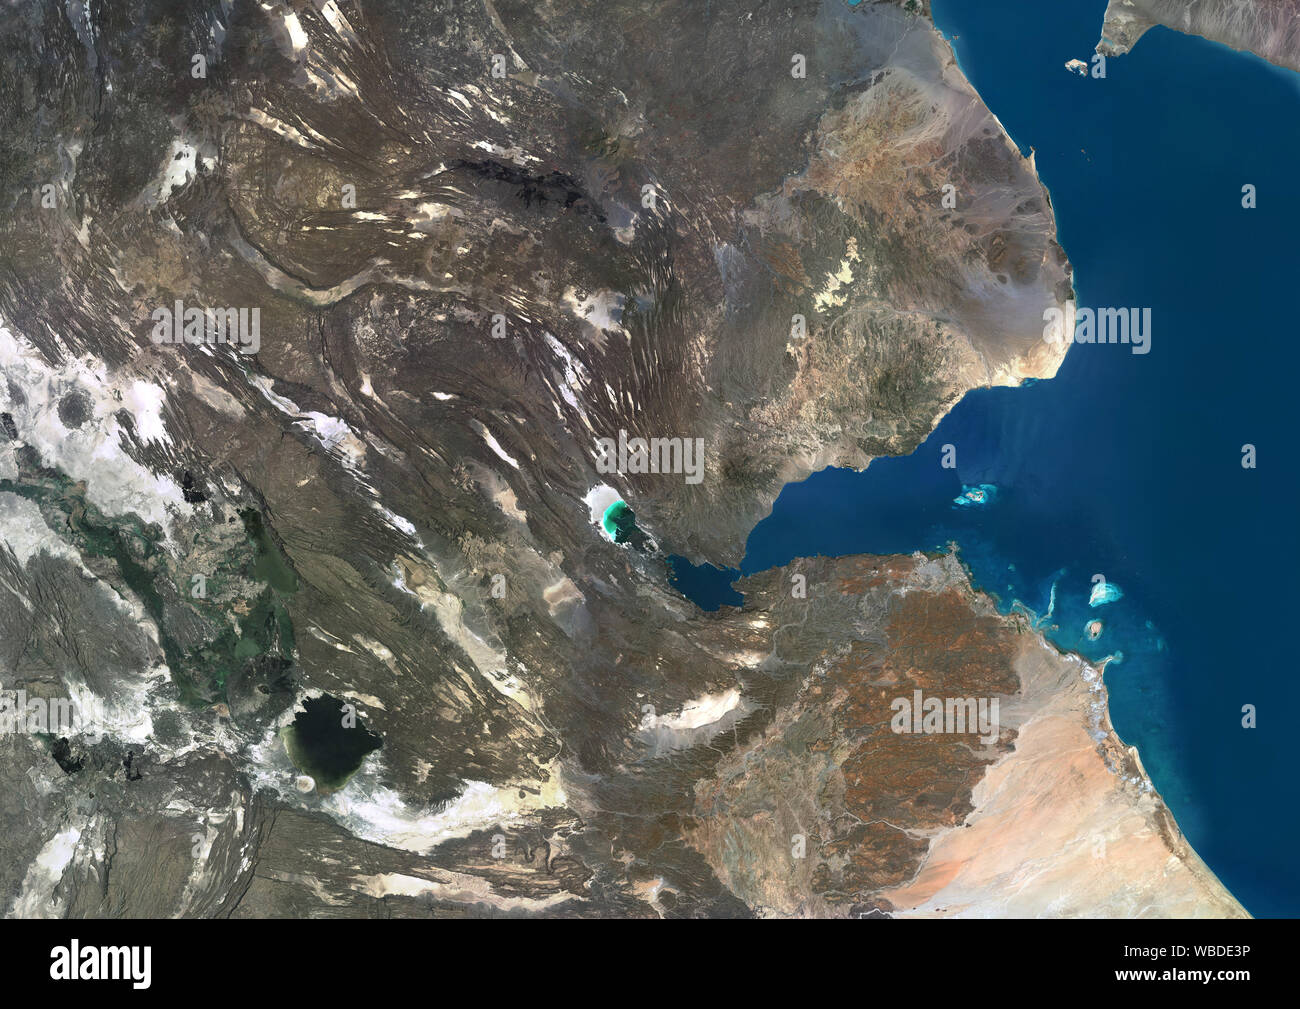 Imagen de satélite de color de Djibouti, un país situado en el Cuerno de África. Esta imagen fue compilado a partir de datos adquiridos por Sentinel-2 y Landsat 8 satélites. Foto de stock